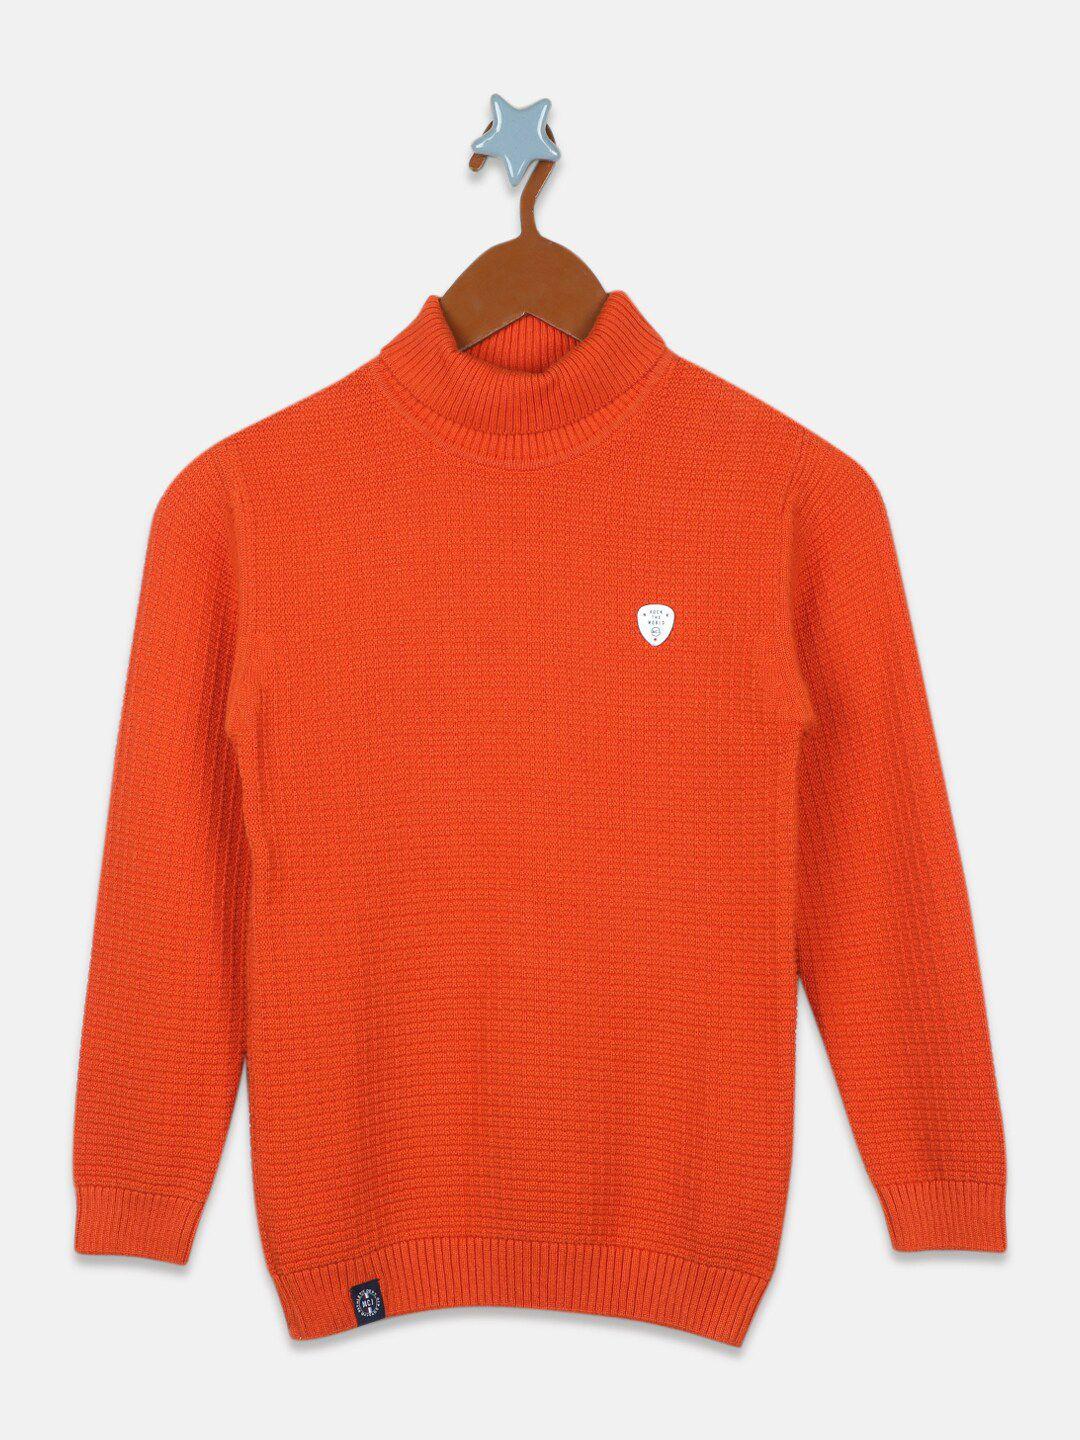 monte carlo boys geometric self design pure cotton pullover sweater